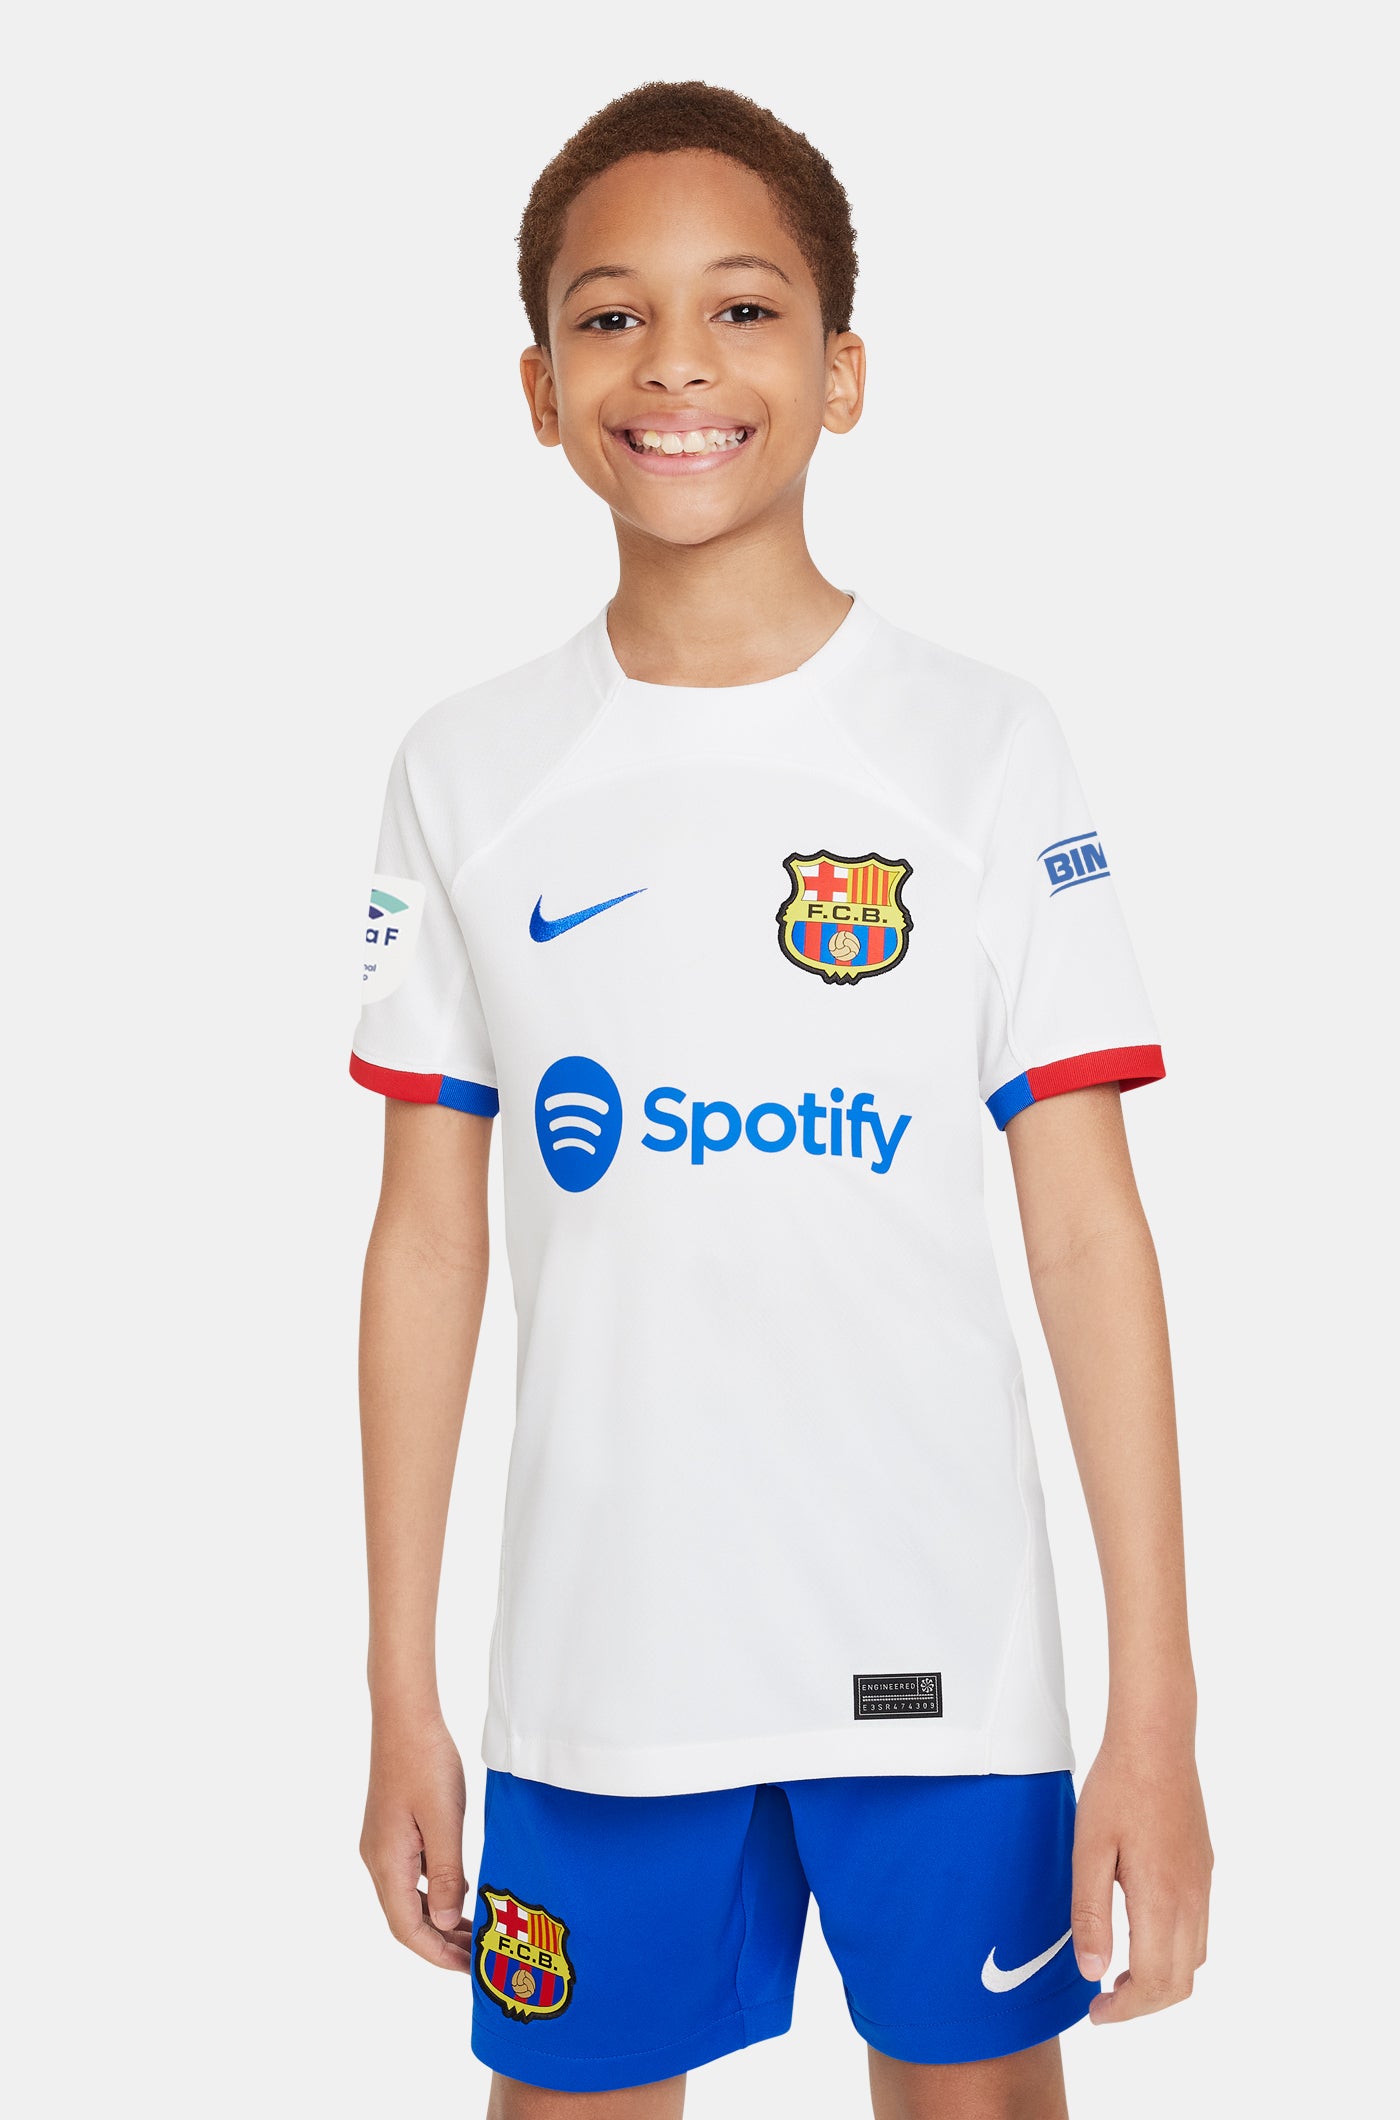 Liga F Camiseta segunda equipación FC Barcelona 23/24 - Junior - PINA